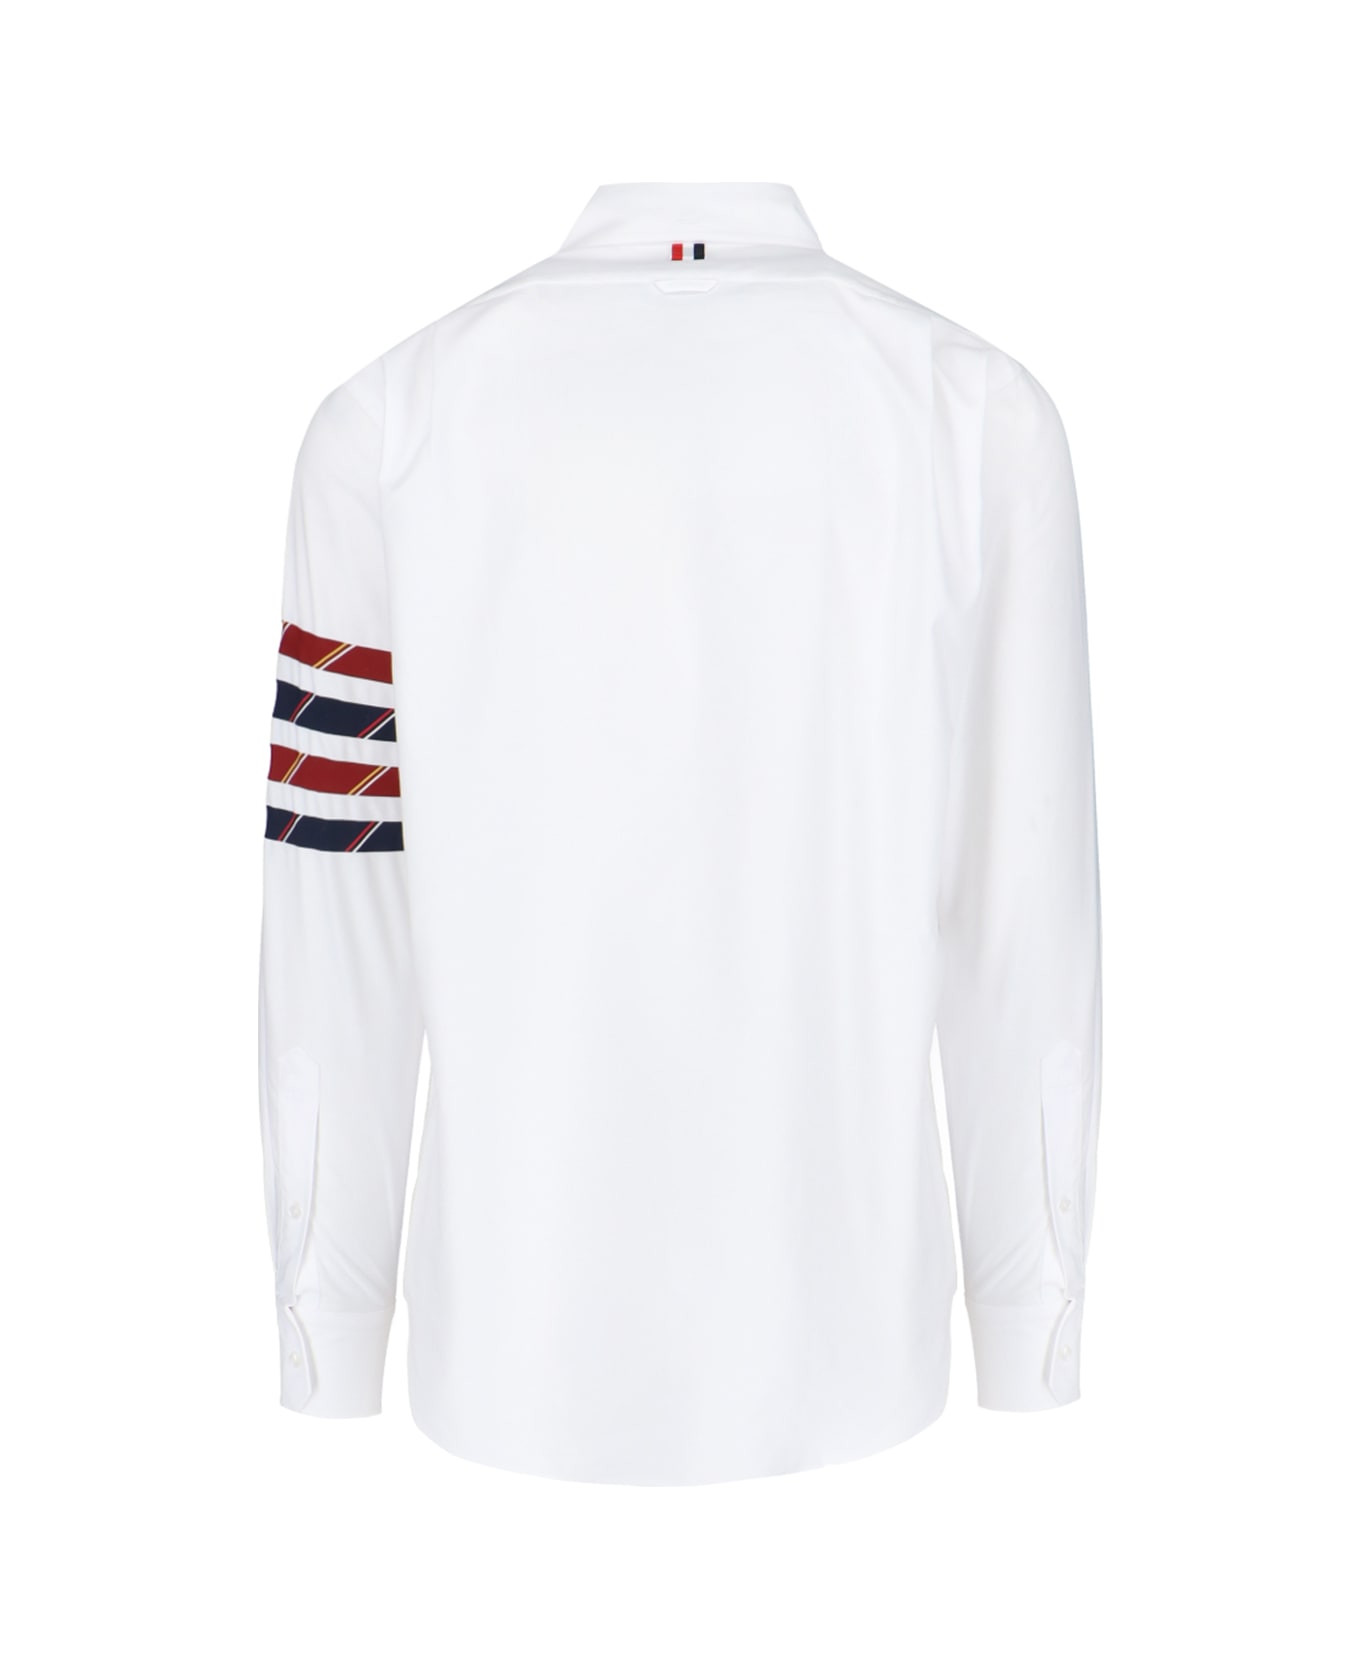 Thom Browne '4-bar' Shirt - White